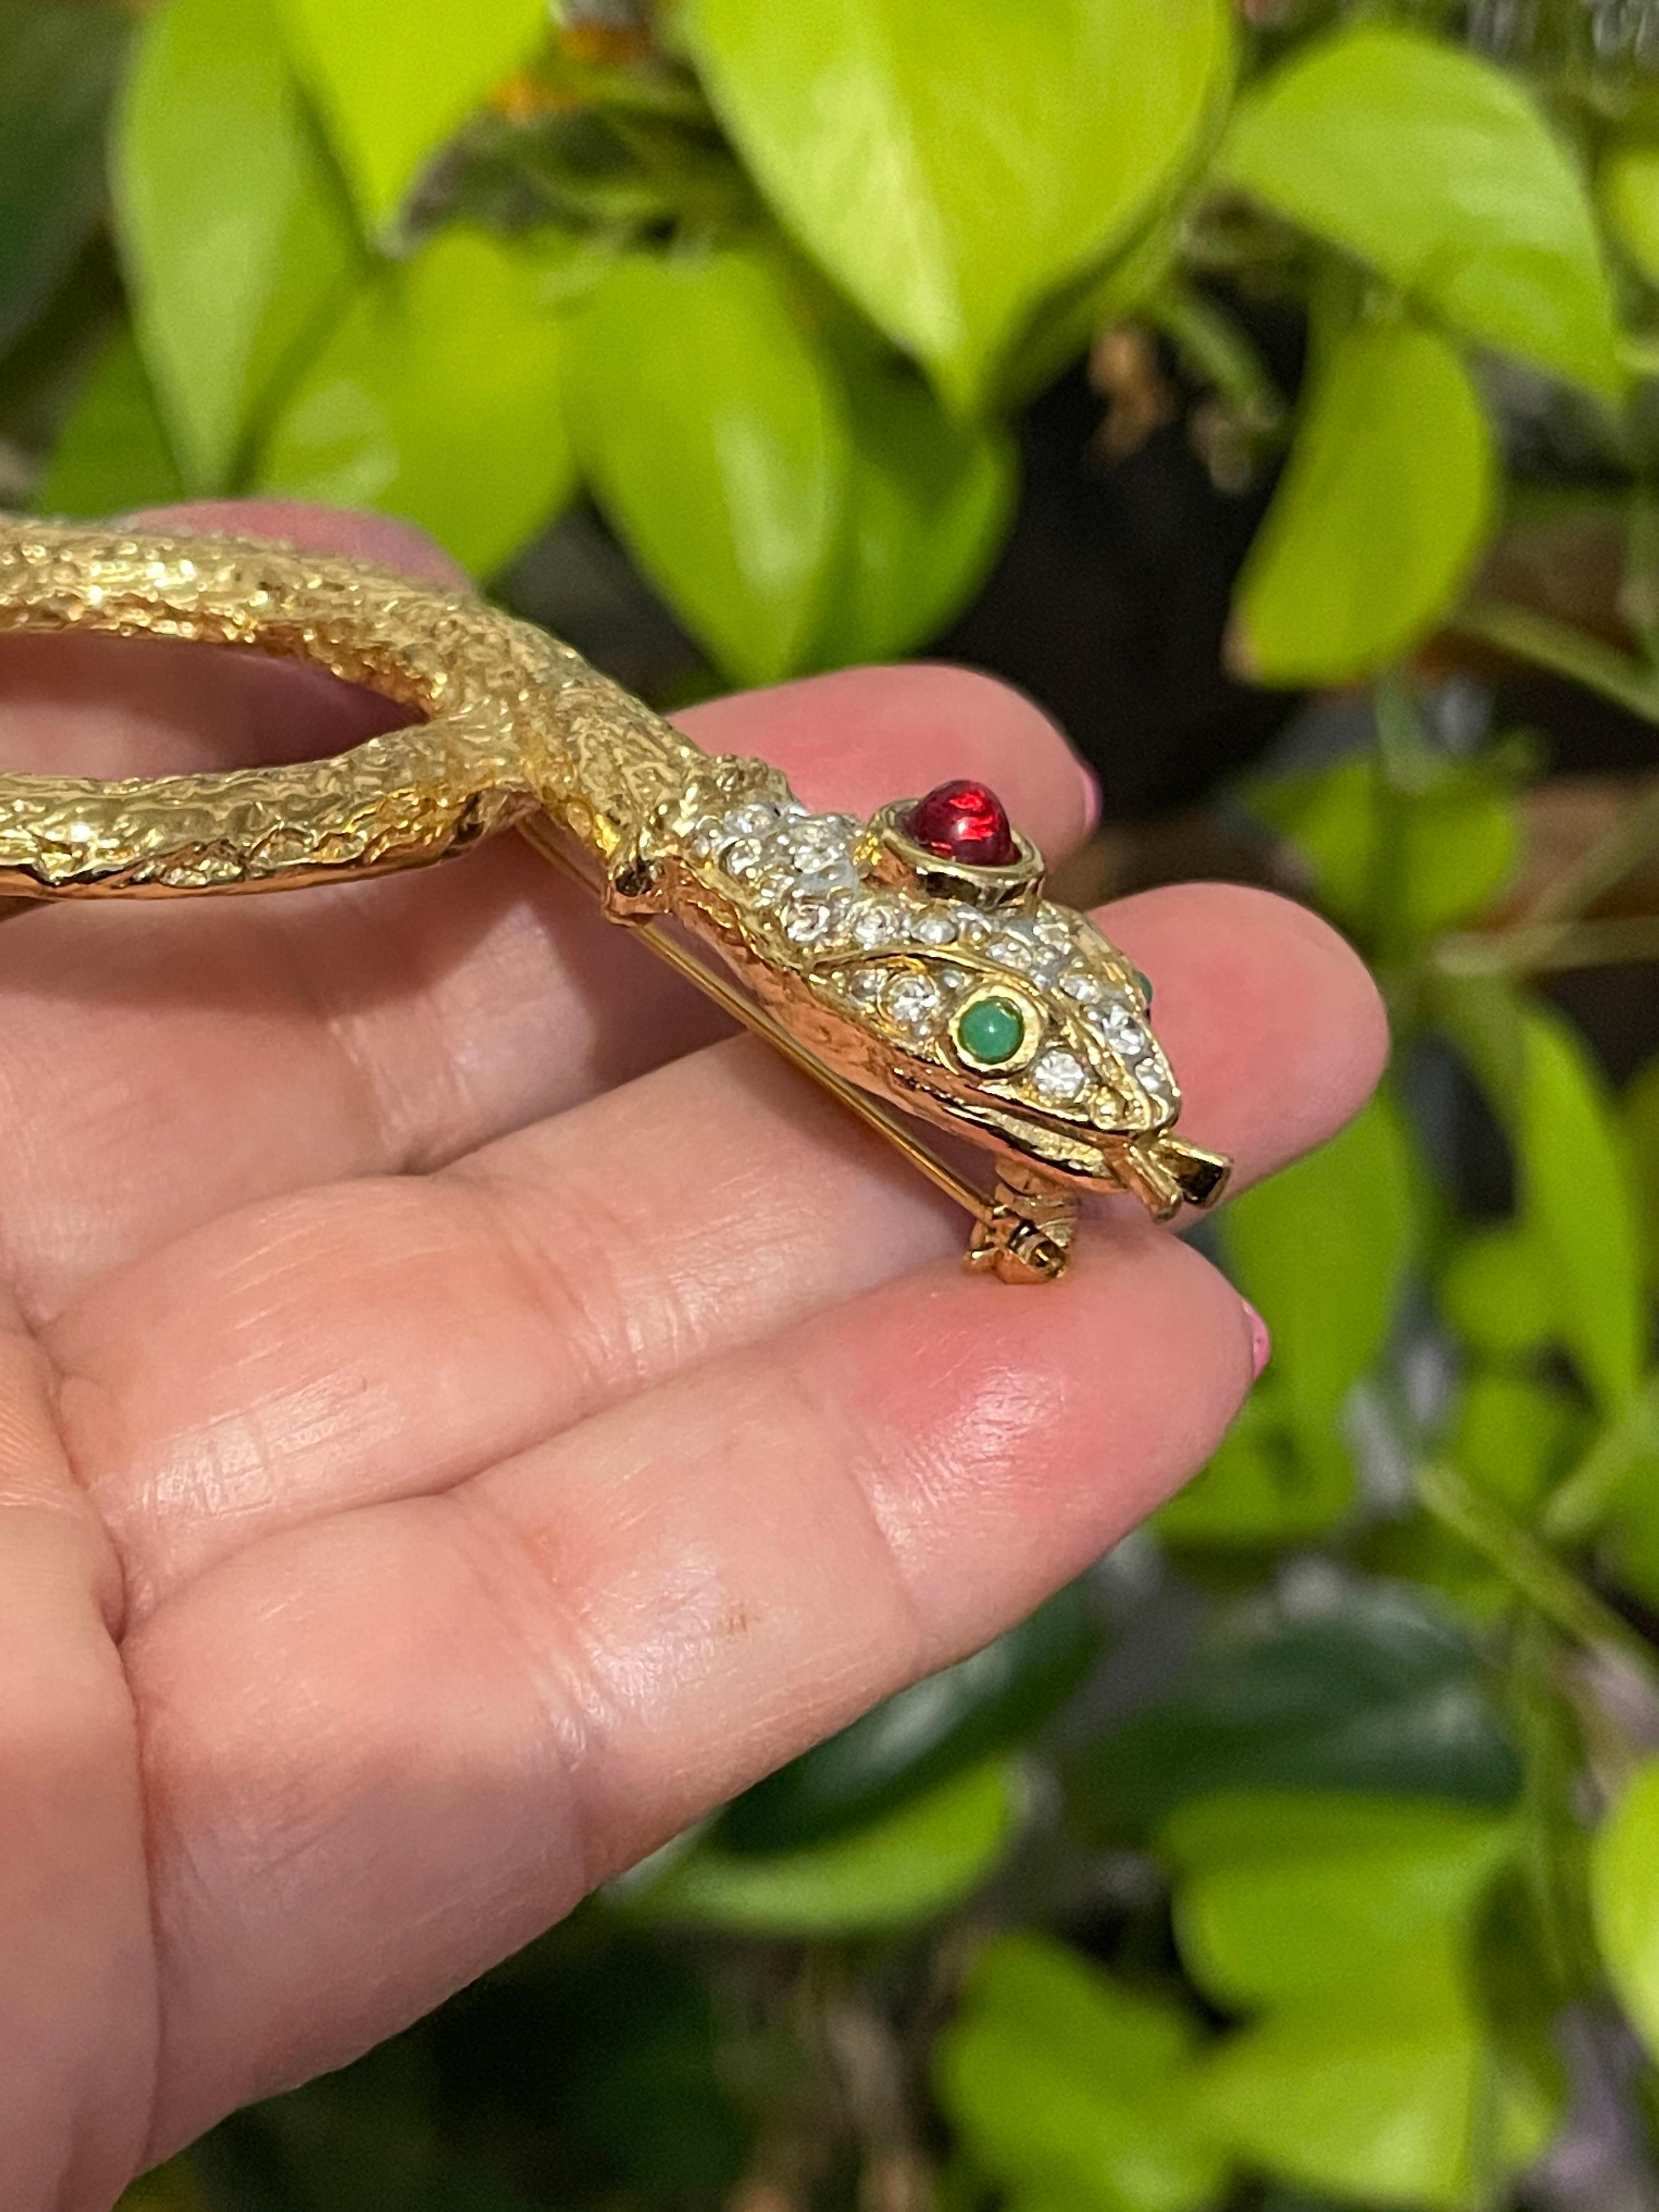 Yosca Serpent Snake Brooch pin New, Never worn 1980s Gold Gilt  5